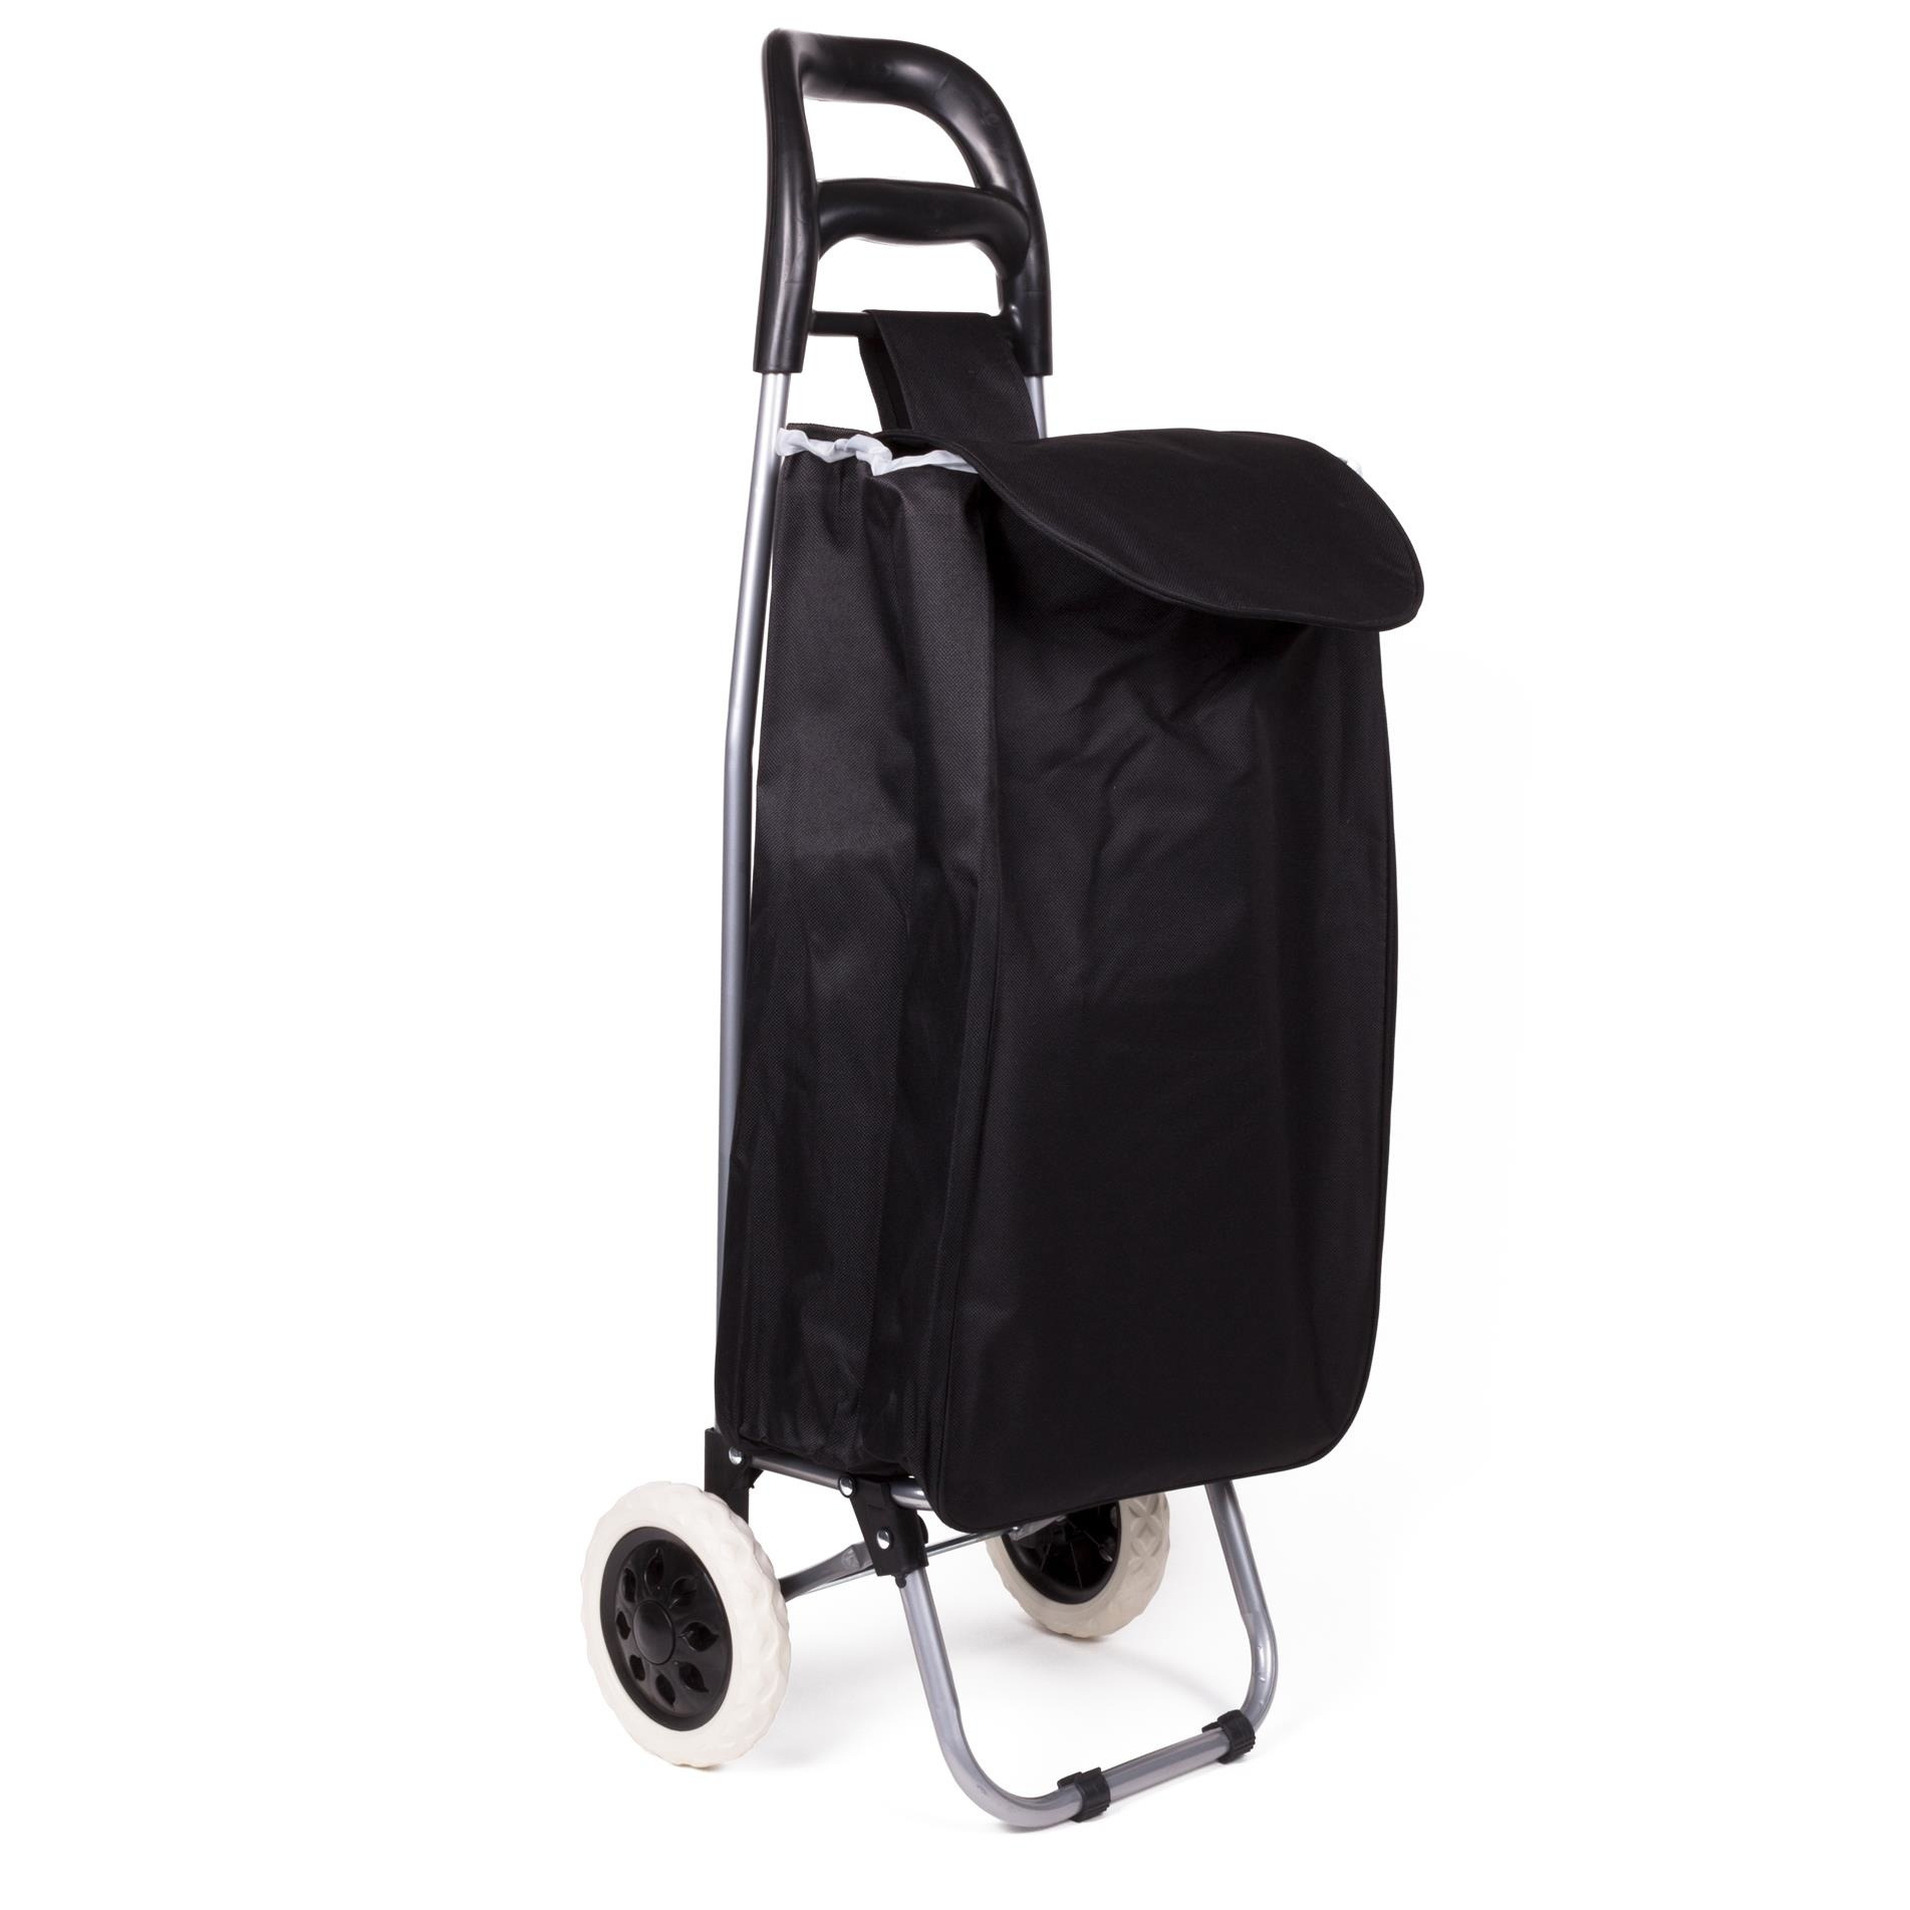 Benson Boodschappen trolley tas - inhoud liter - zwart - met wielen - 32 x 21 x 92 cm -